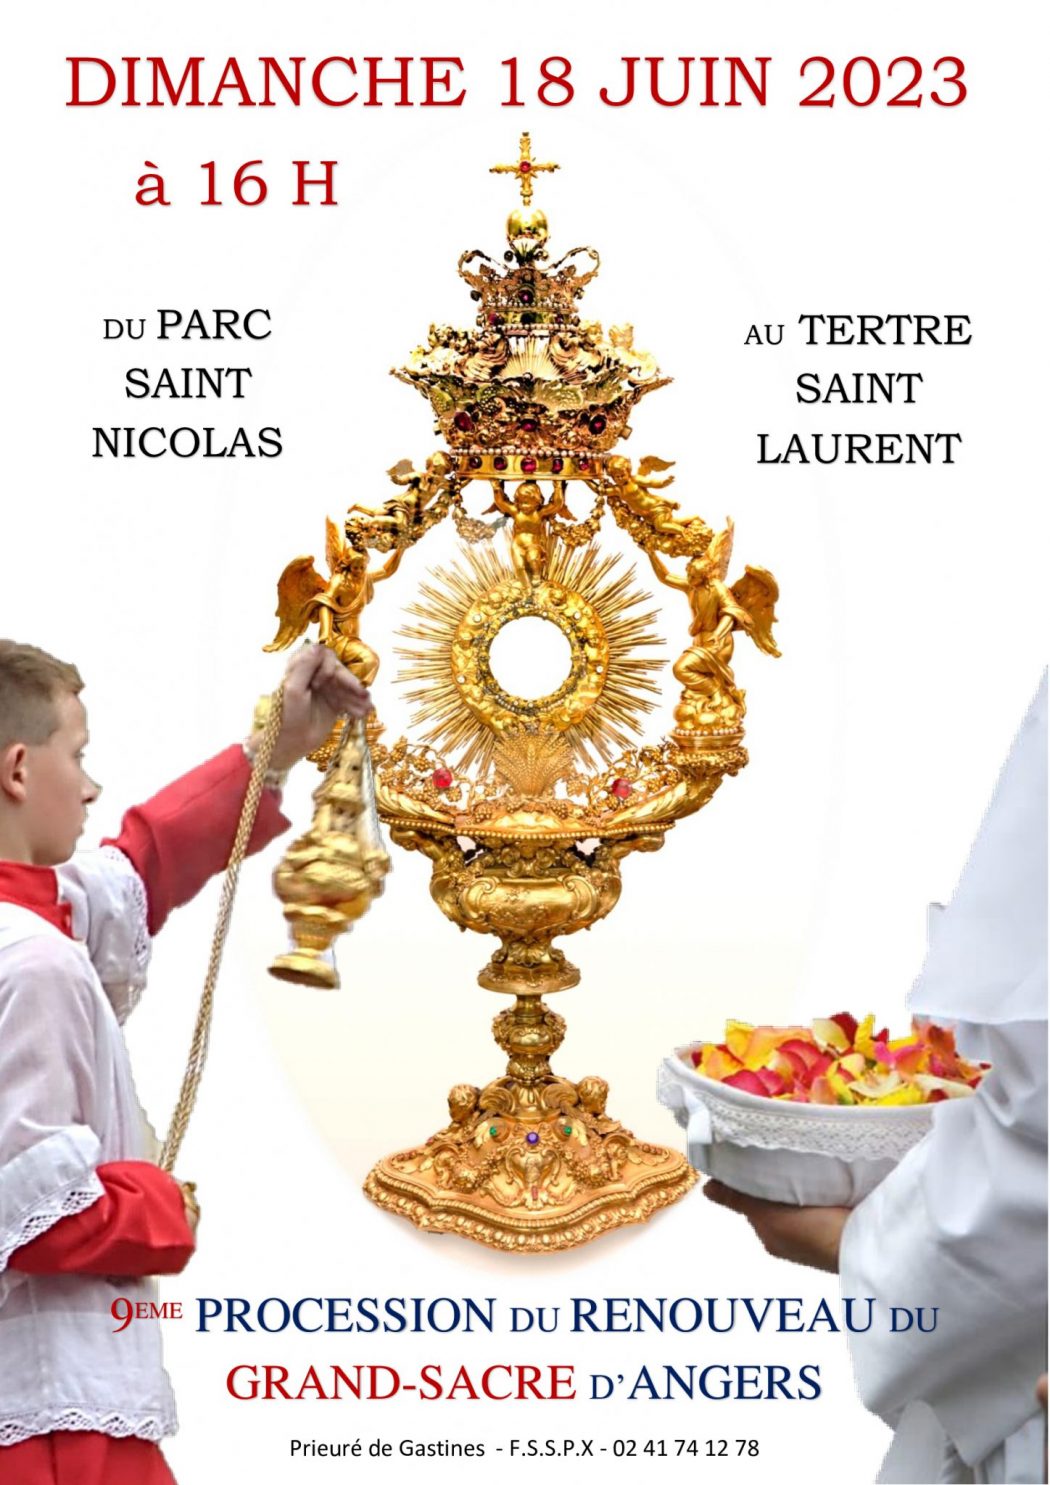 Le Grand Sacre d’Angers : une procession traditionnelle relancée par la FSSPX